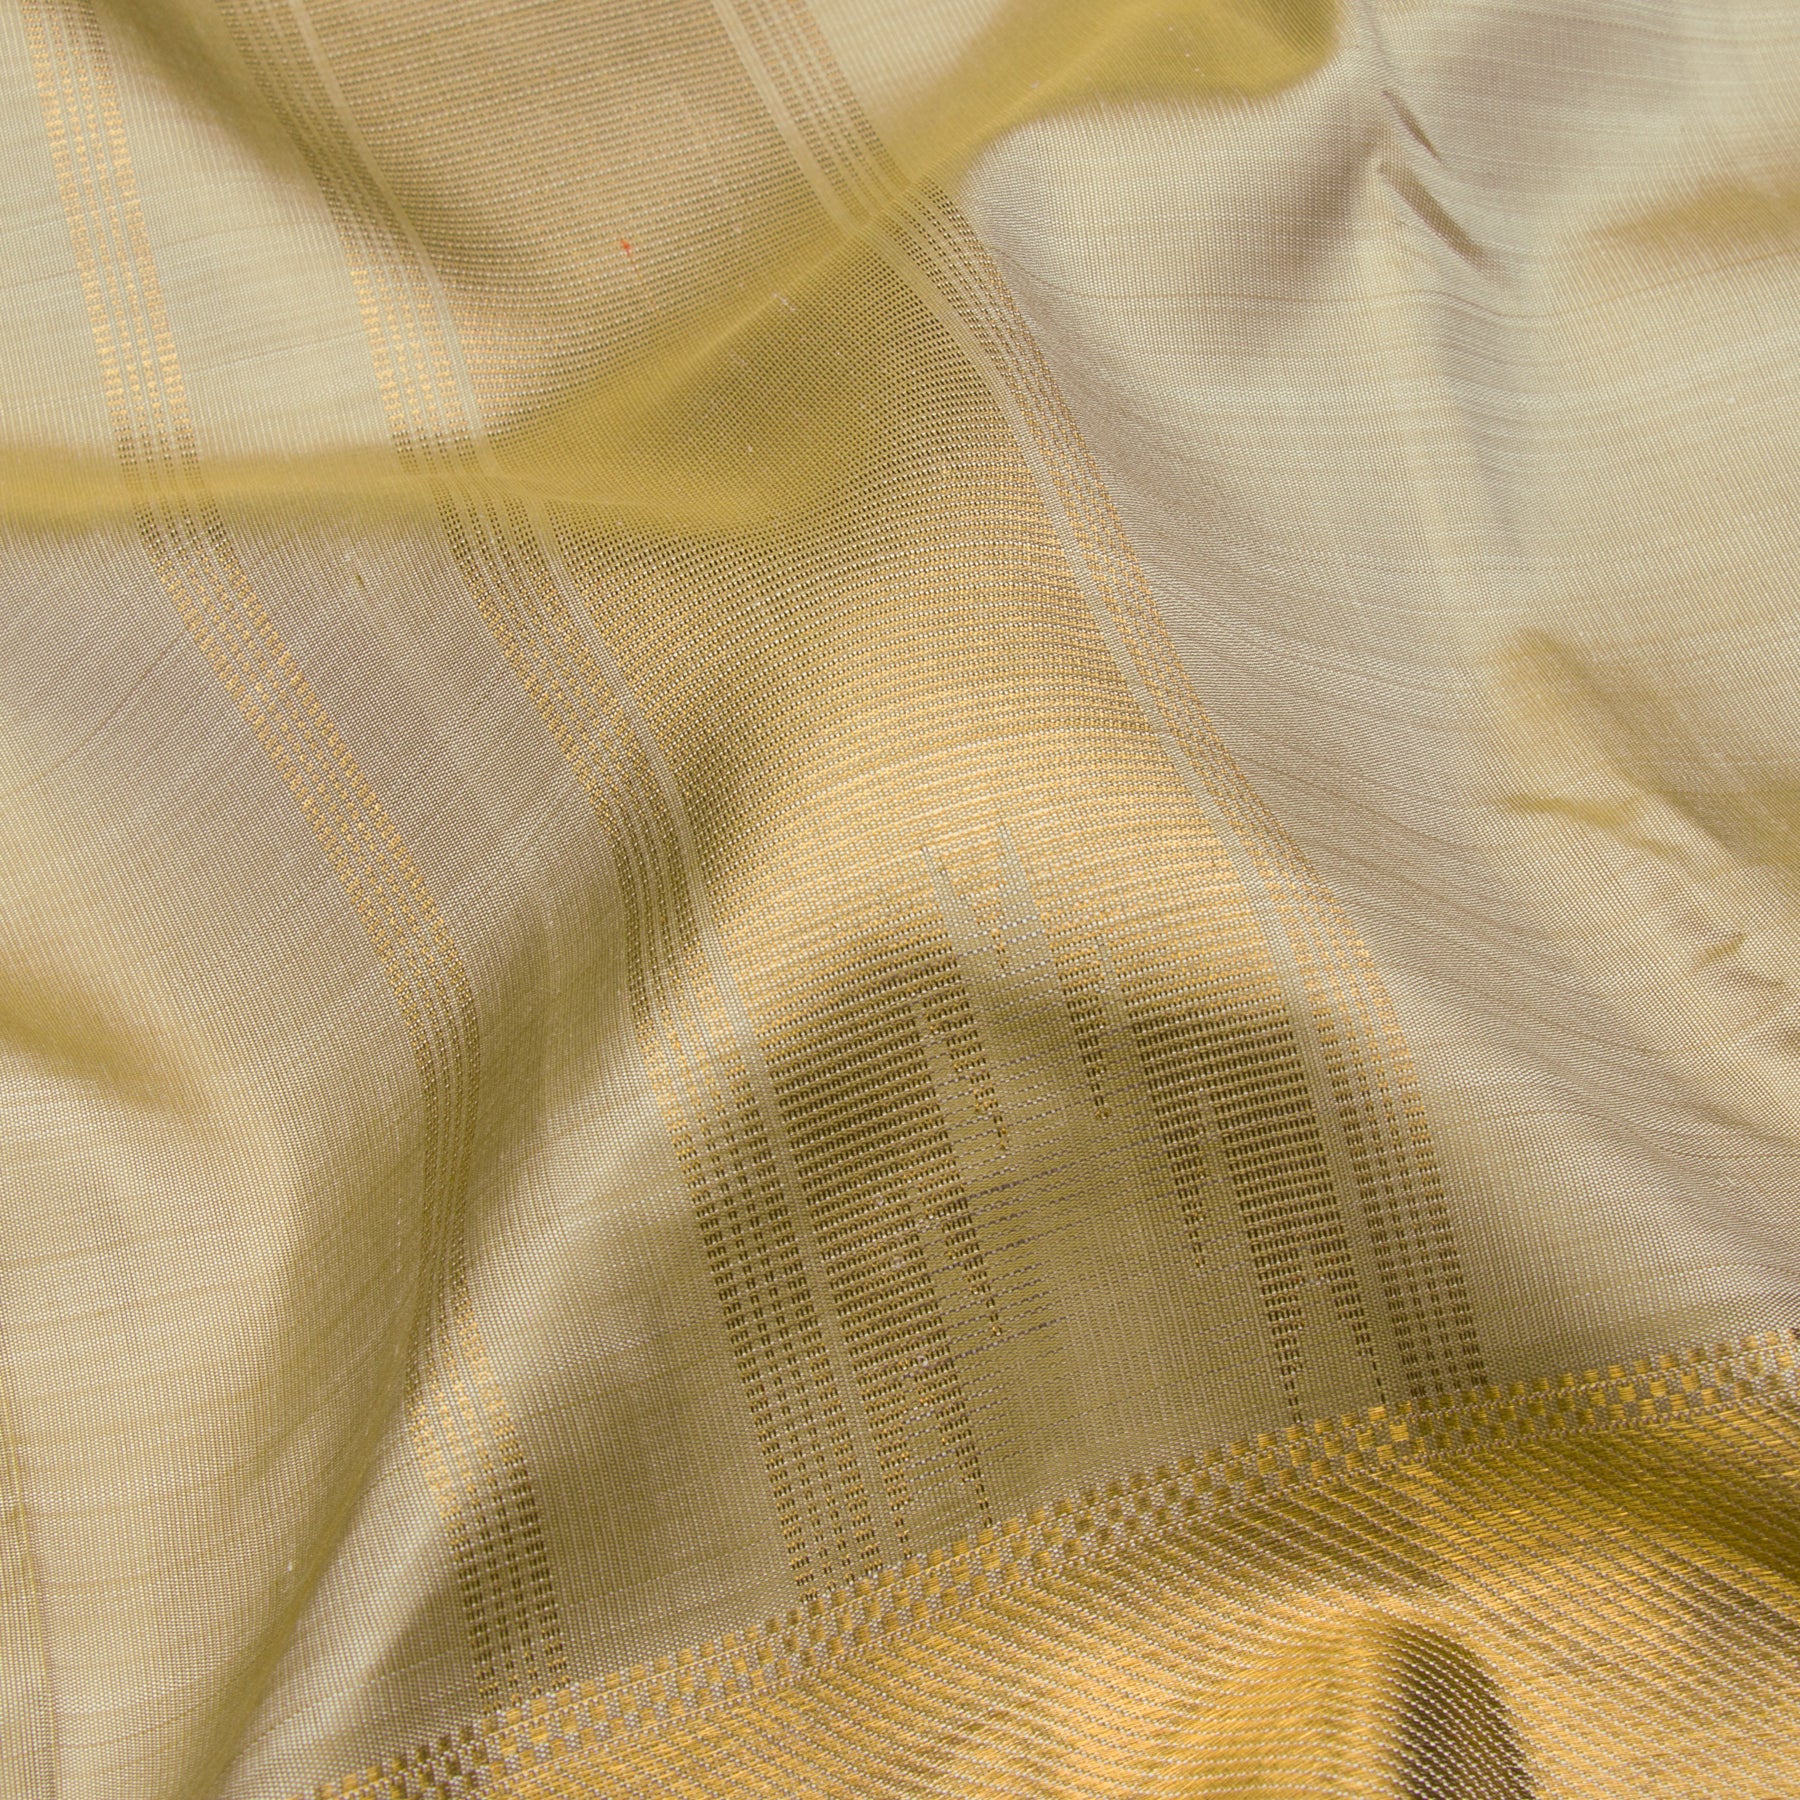 Kanakavalli Kanjivaram Silk Angavastram Set 23-110-HA001-09075 - Fabric View